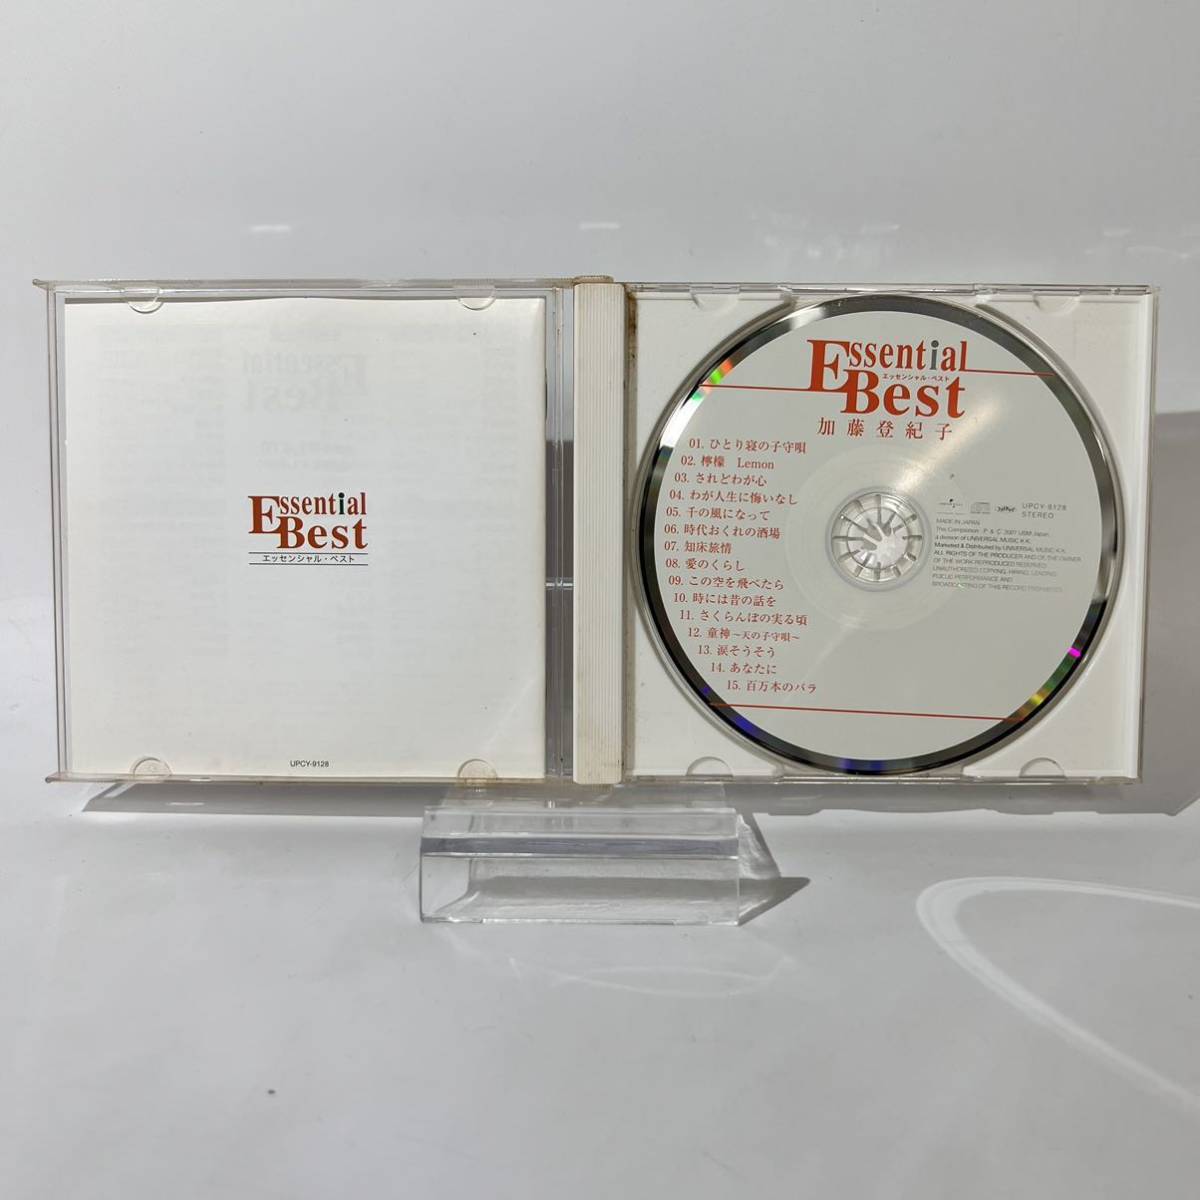 TK■ 加藤登紀子 TOKIKO KATO EBest ssential Best エッセンシャル・ベスト CD_画像3